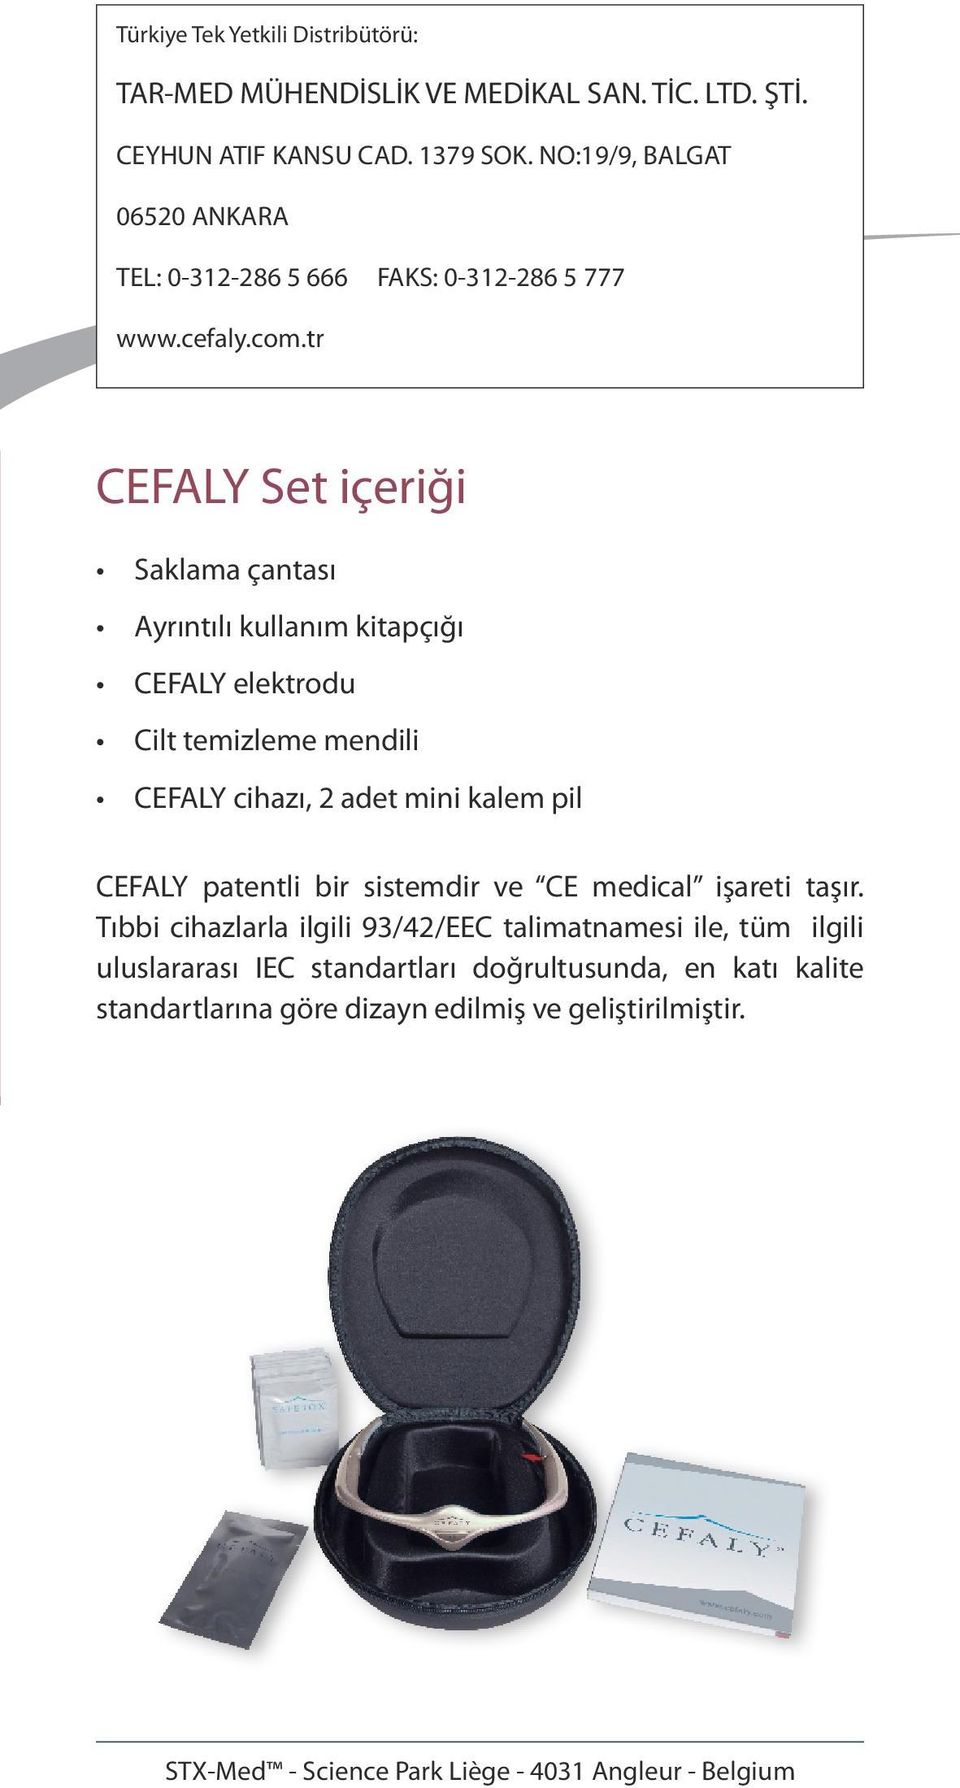 tr CEFALY Set içeriği Saklama çantası Ayrıntılı kullanım kitapçığı CEFALY elektrodu Cilt temizleme mendili CEFALY cihazı, 2 adet mini kalem pil CEFALY patentli